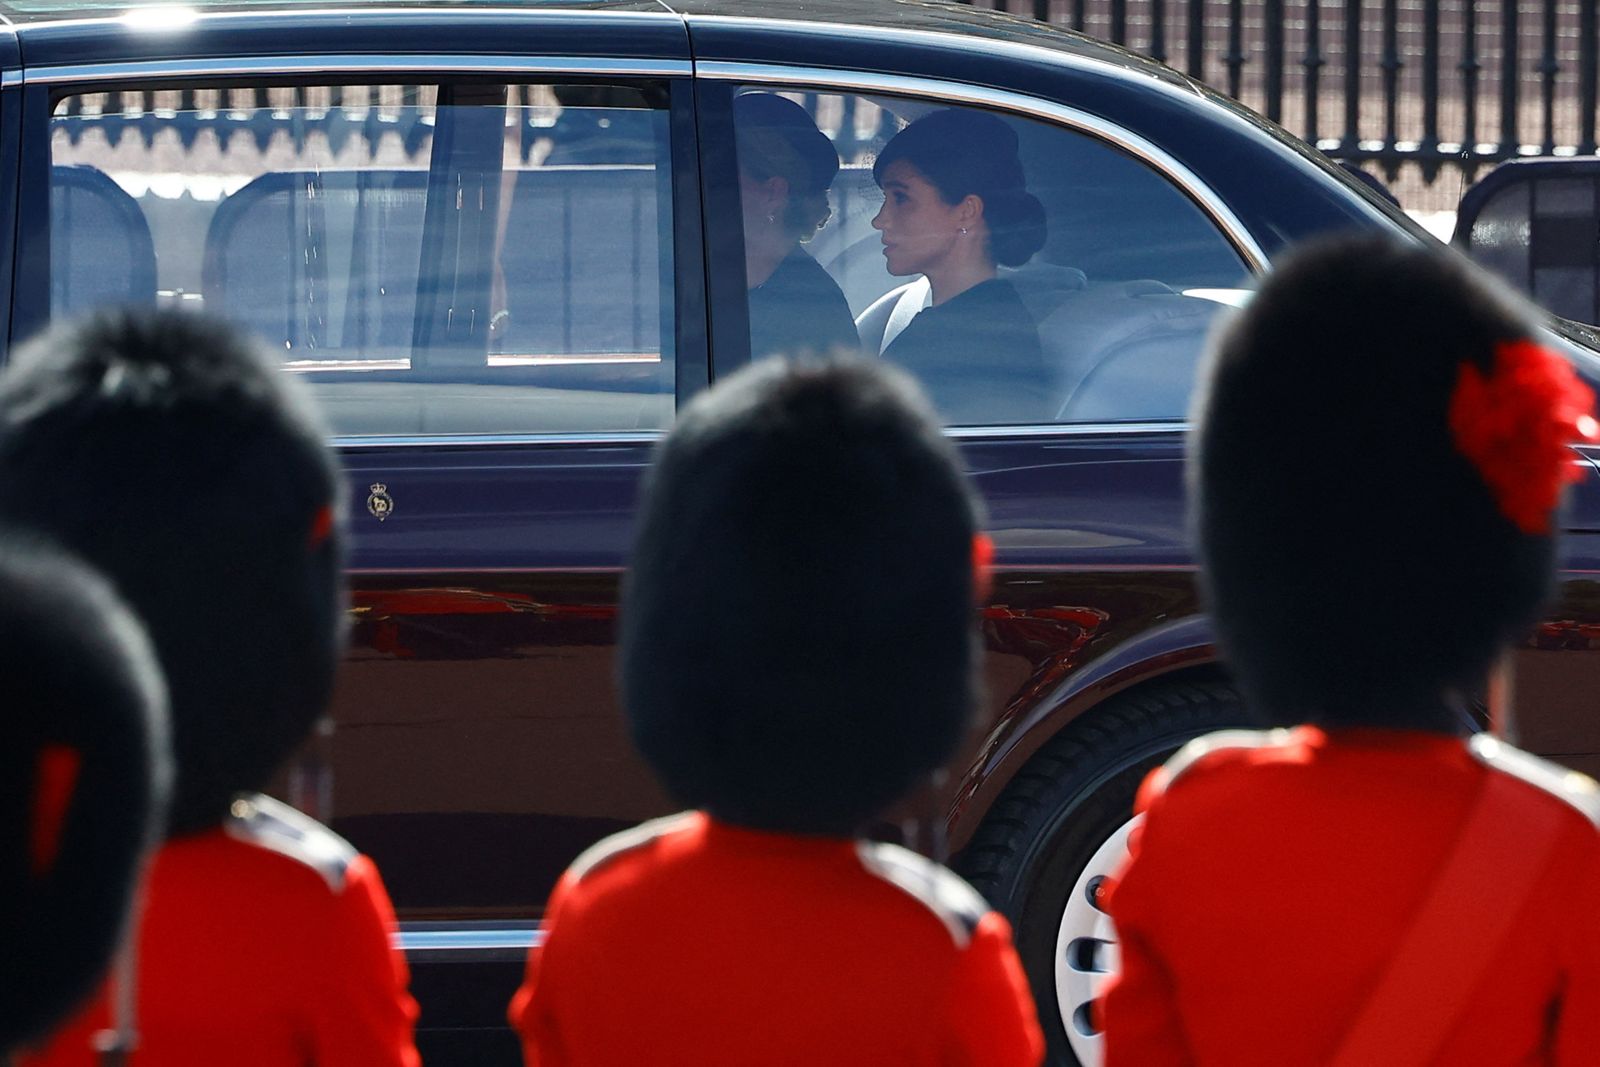 ميجان دوقة ساسكس زوجة الأمير هاري تشارك في موكب نقل الملكة الراحلة إليزابيث الثانية إلى قصر ويستمنستر بلندن- 14 سبتمبر 2022  - REUTERS